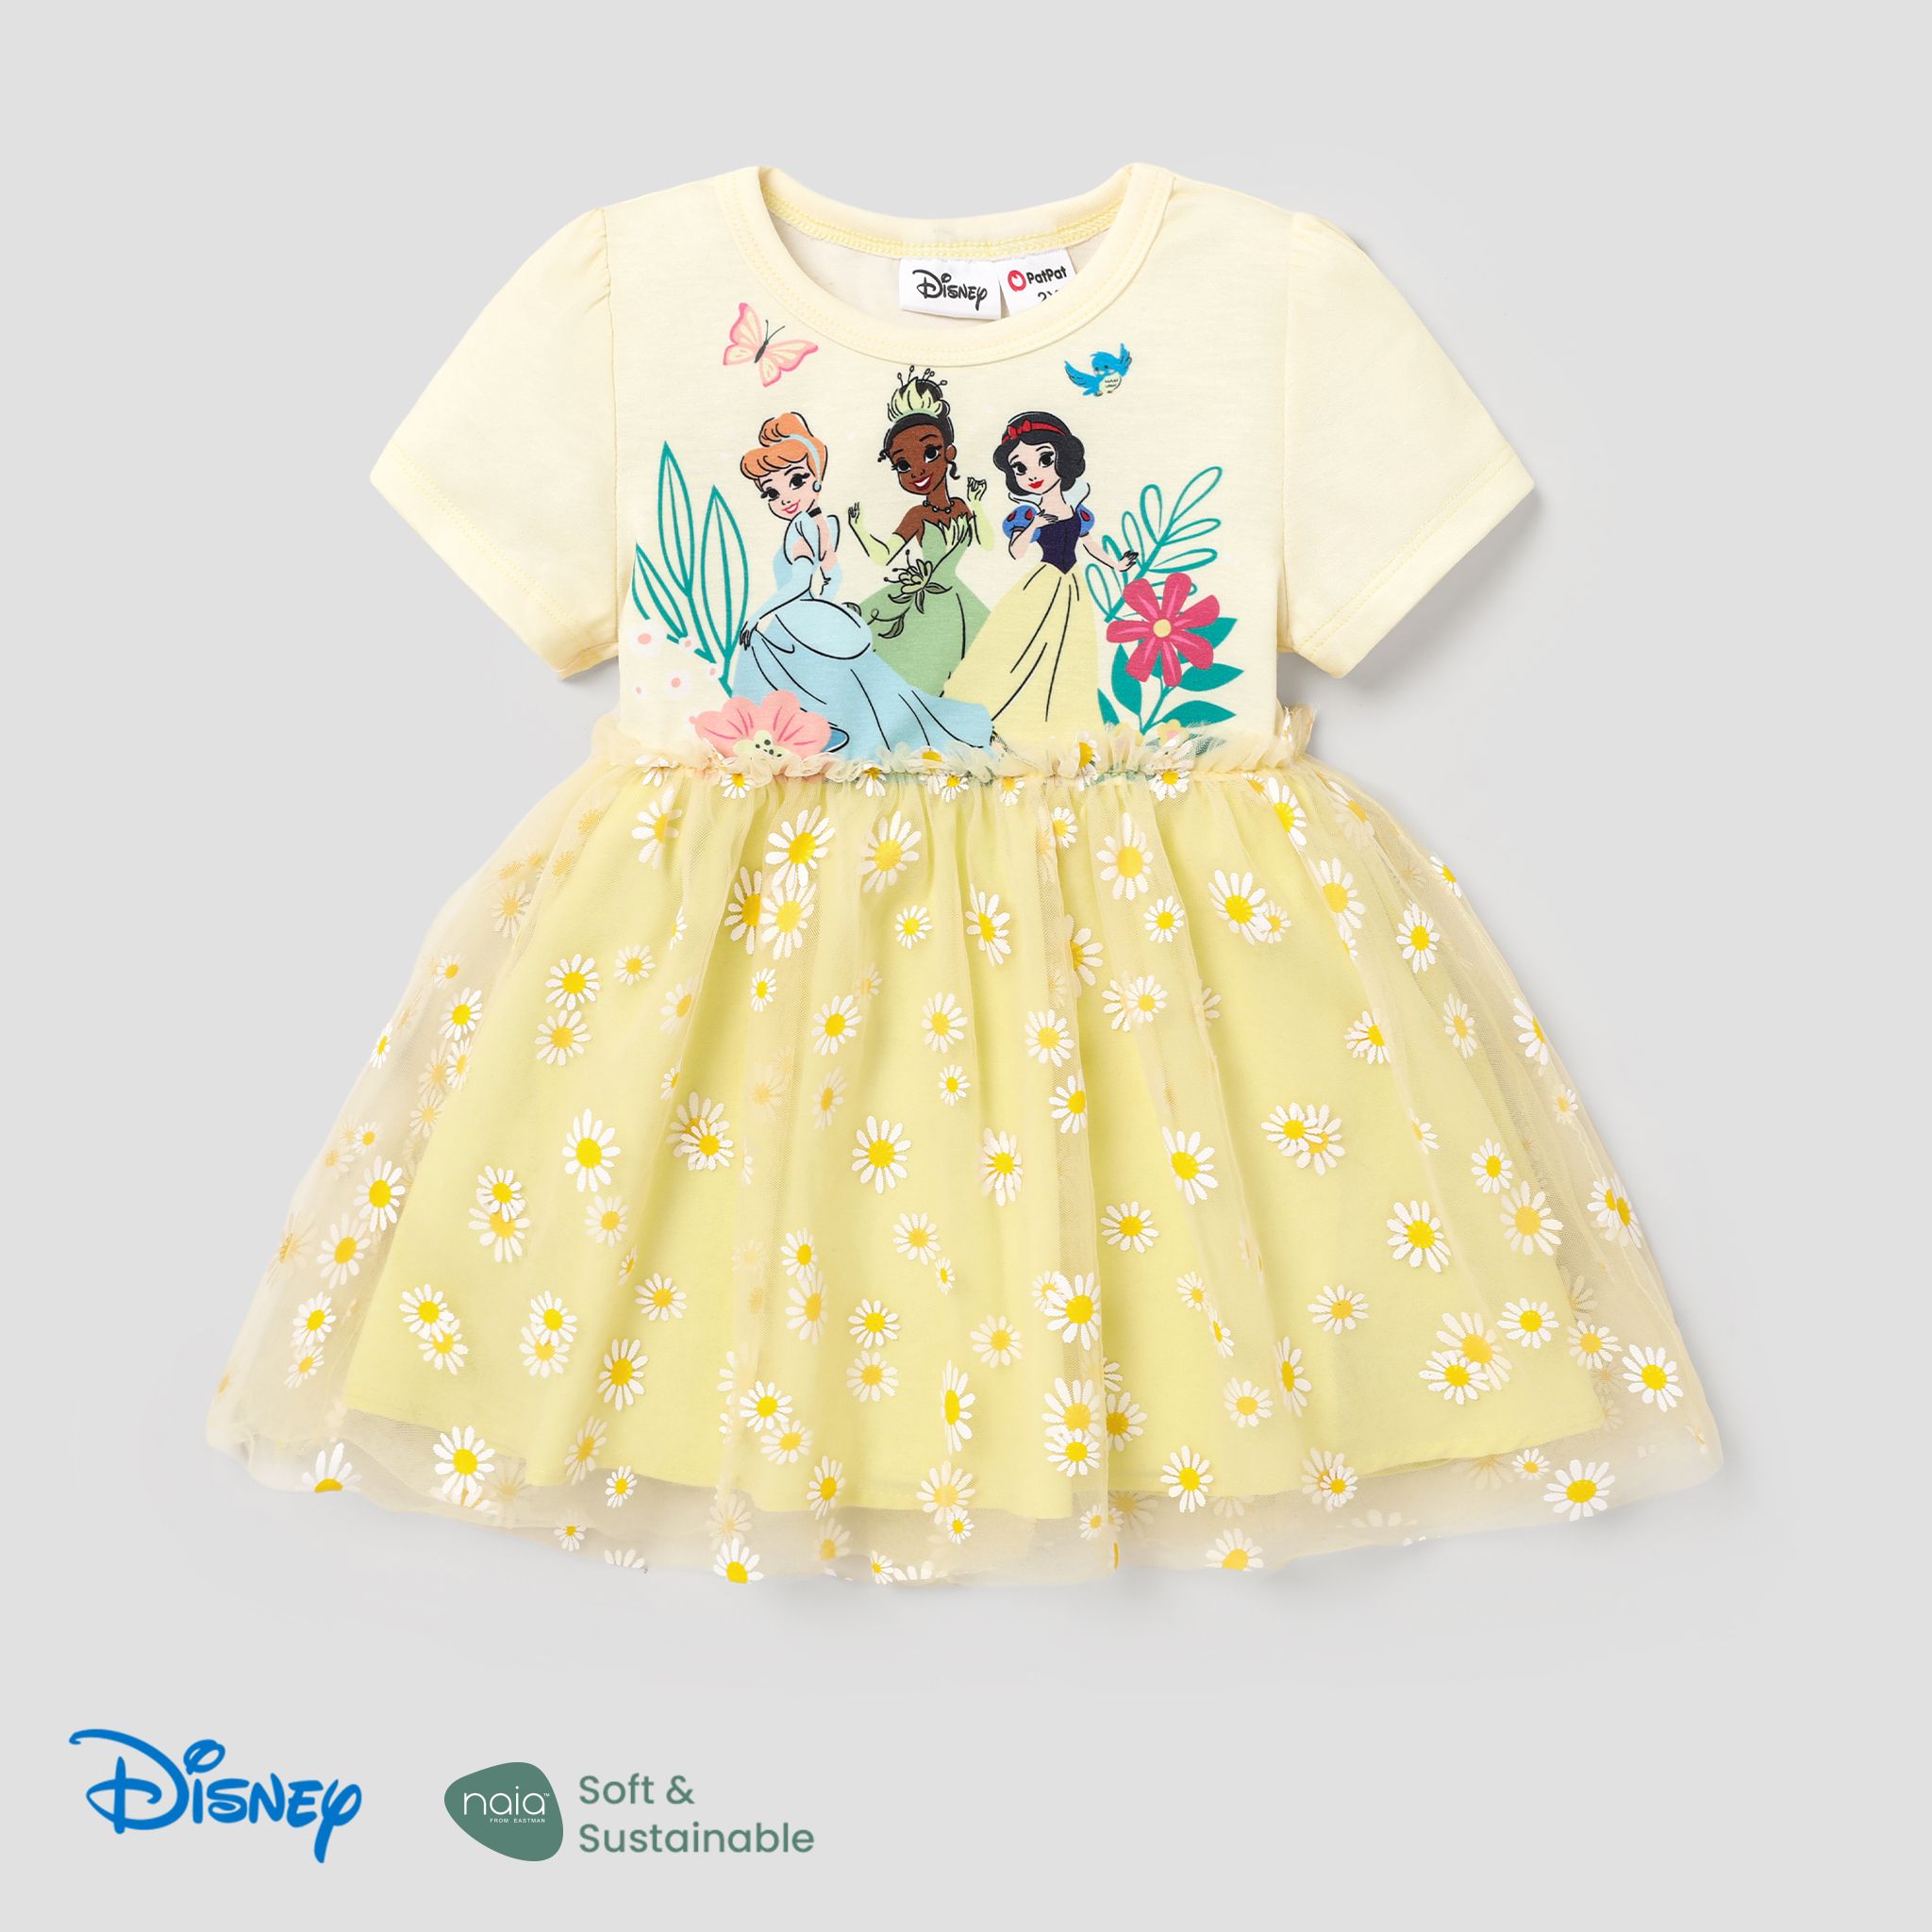 Disney Princess Toddler Girl Naiaâ¢ Character Print And Daisy Mesh Overlay Fairy Dress